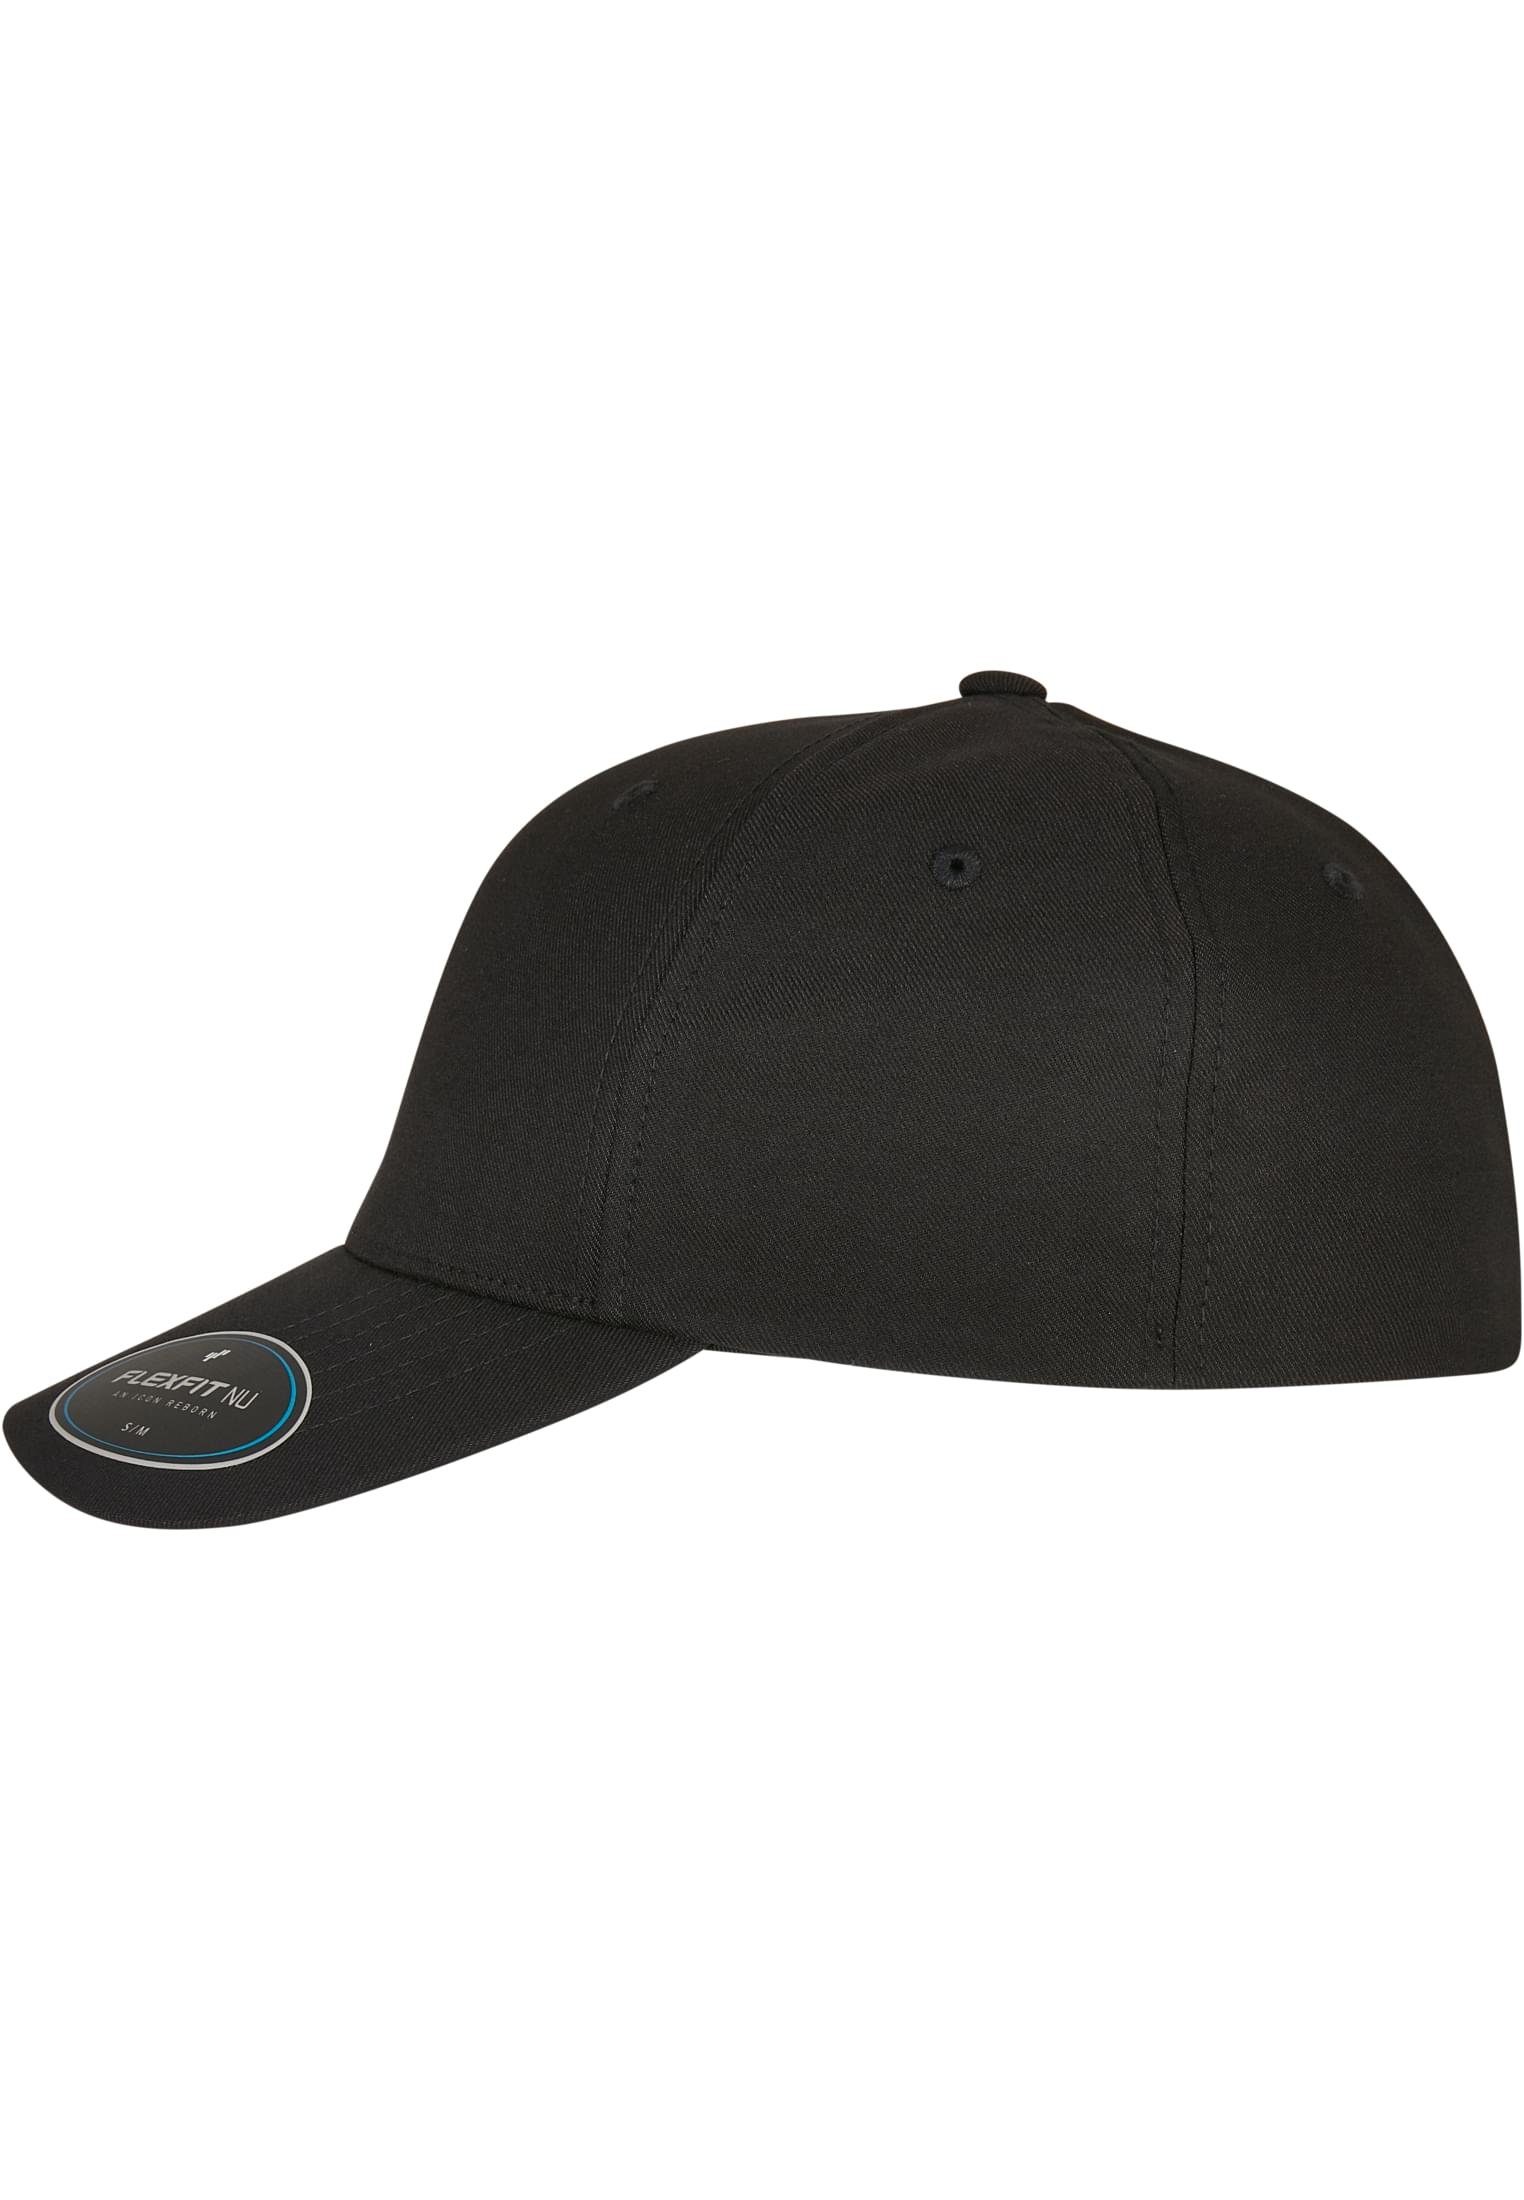 Flexfit Flex Cap Accessoires FLEXFIT CAP black NU®